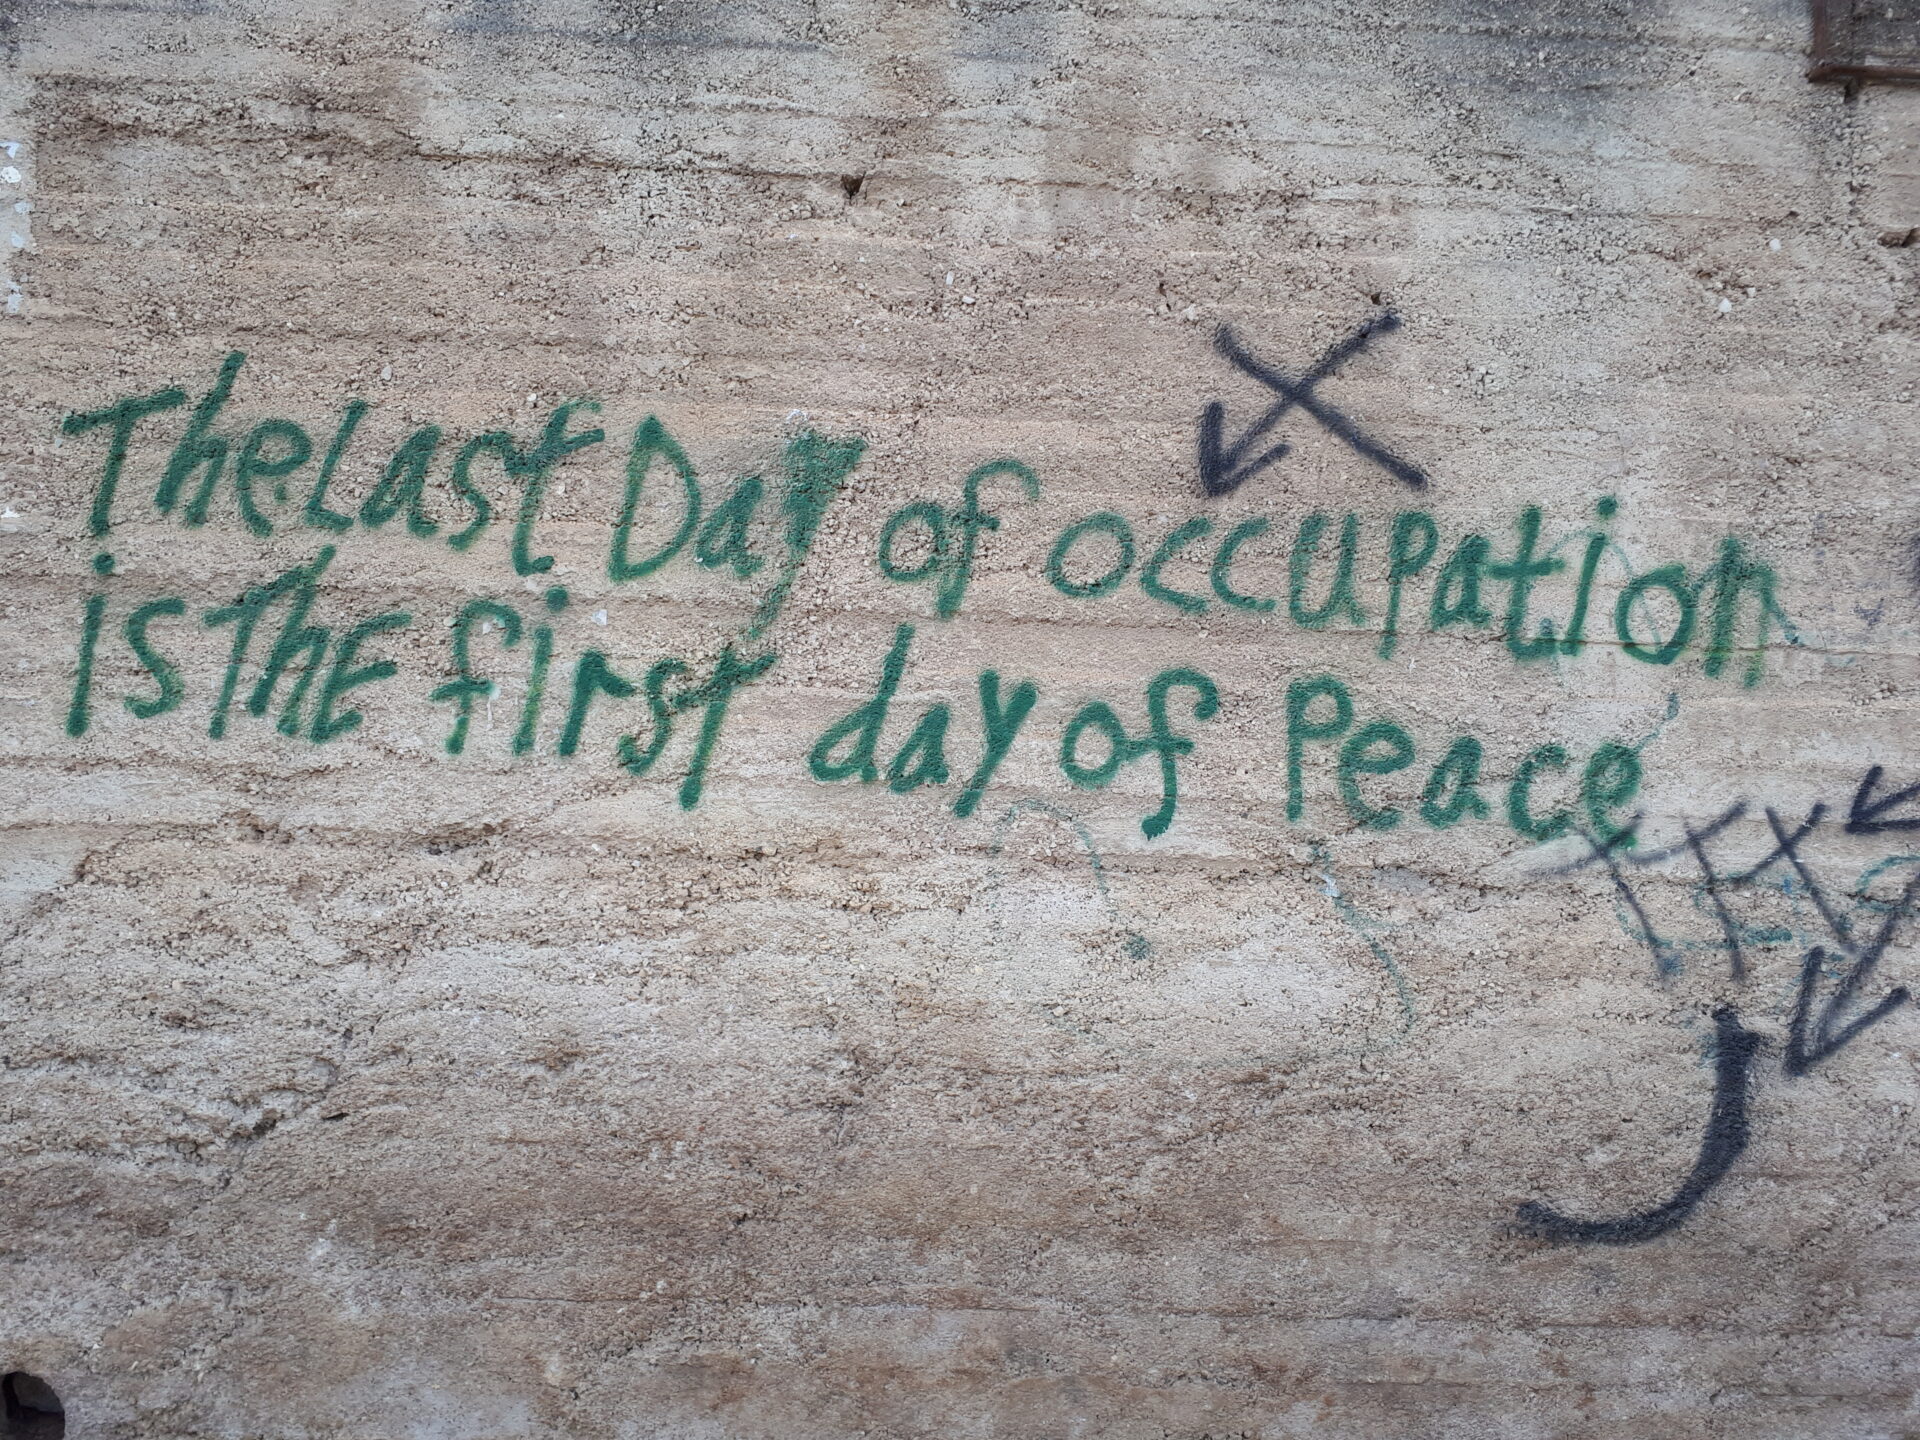 "Der letzte Tag der Besatzung ist der erste Tag des Friedens" © zVg